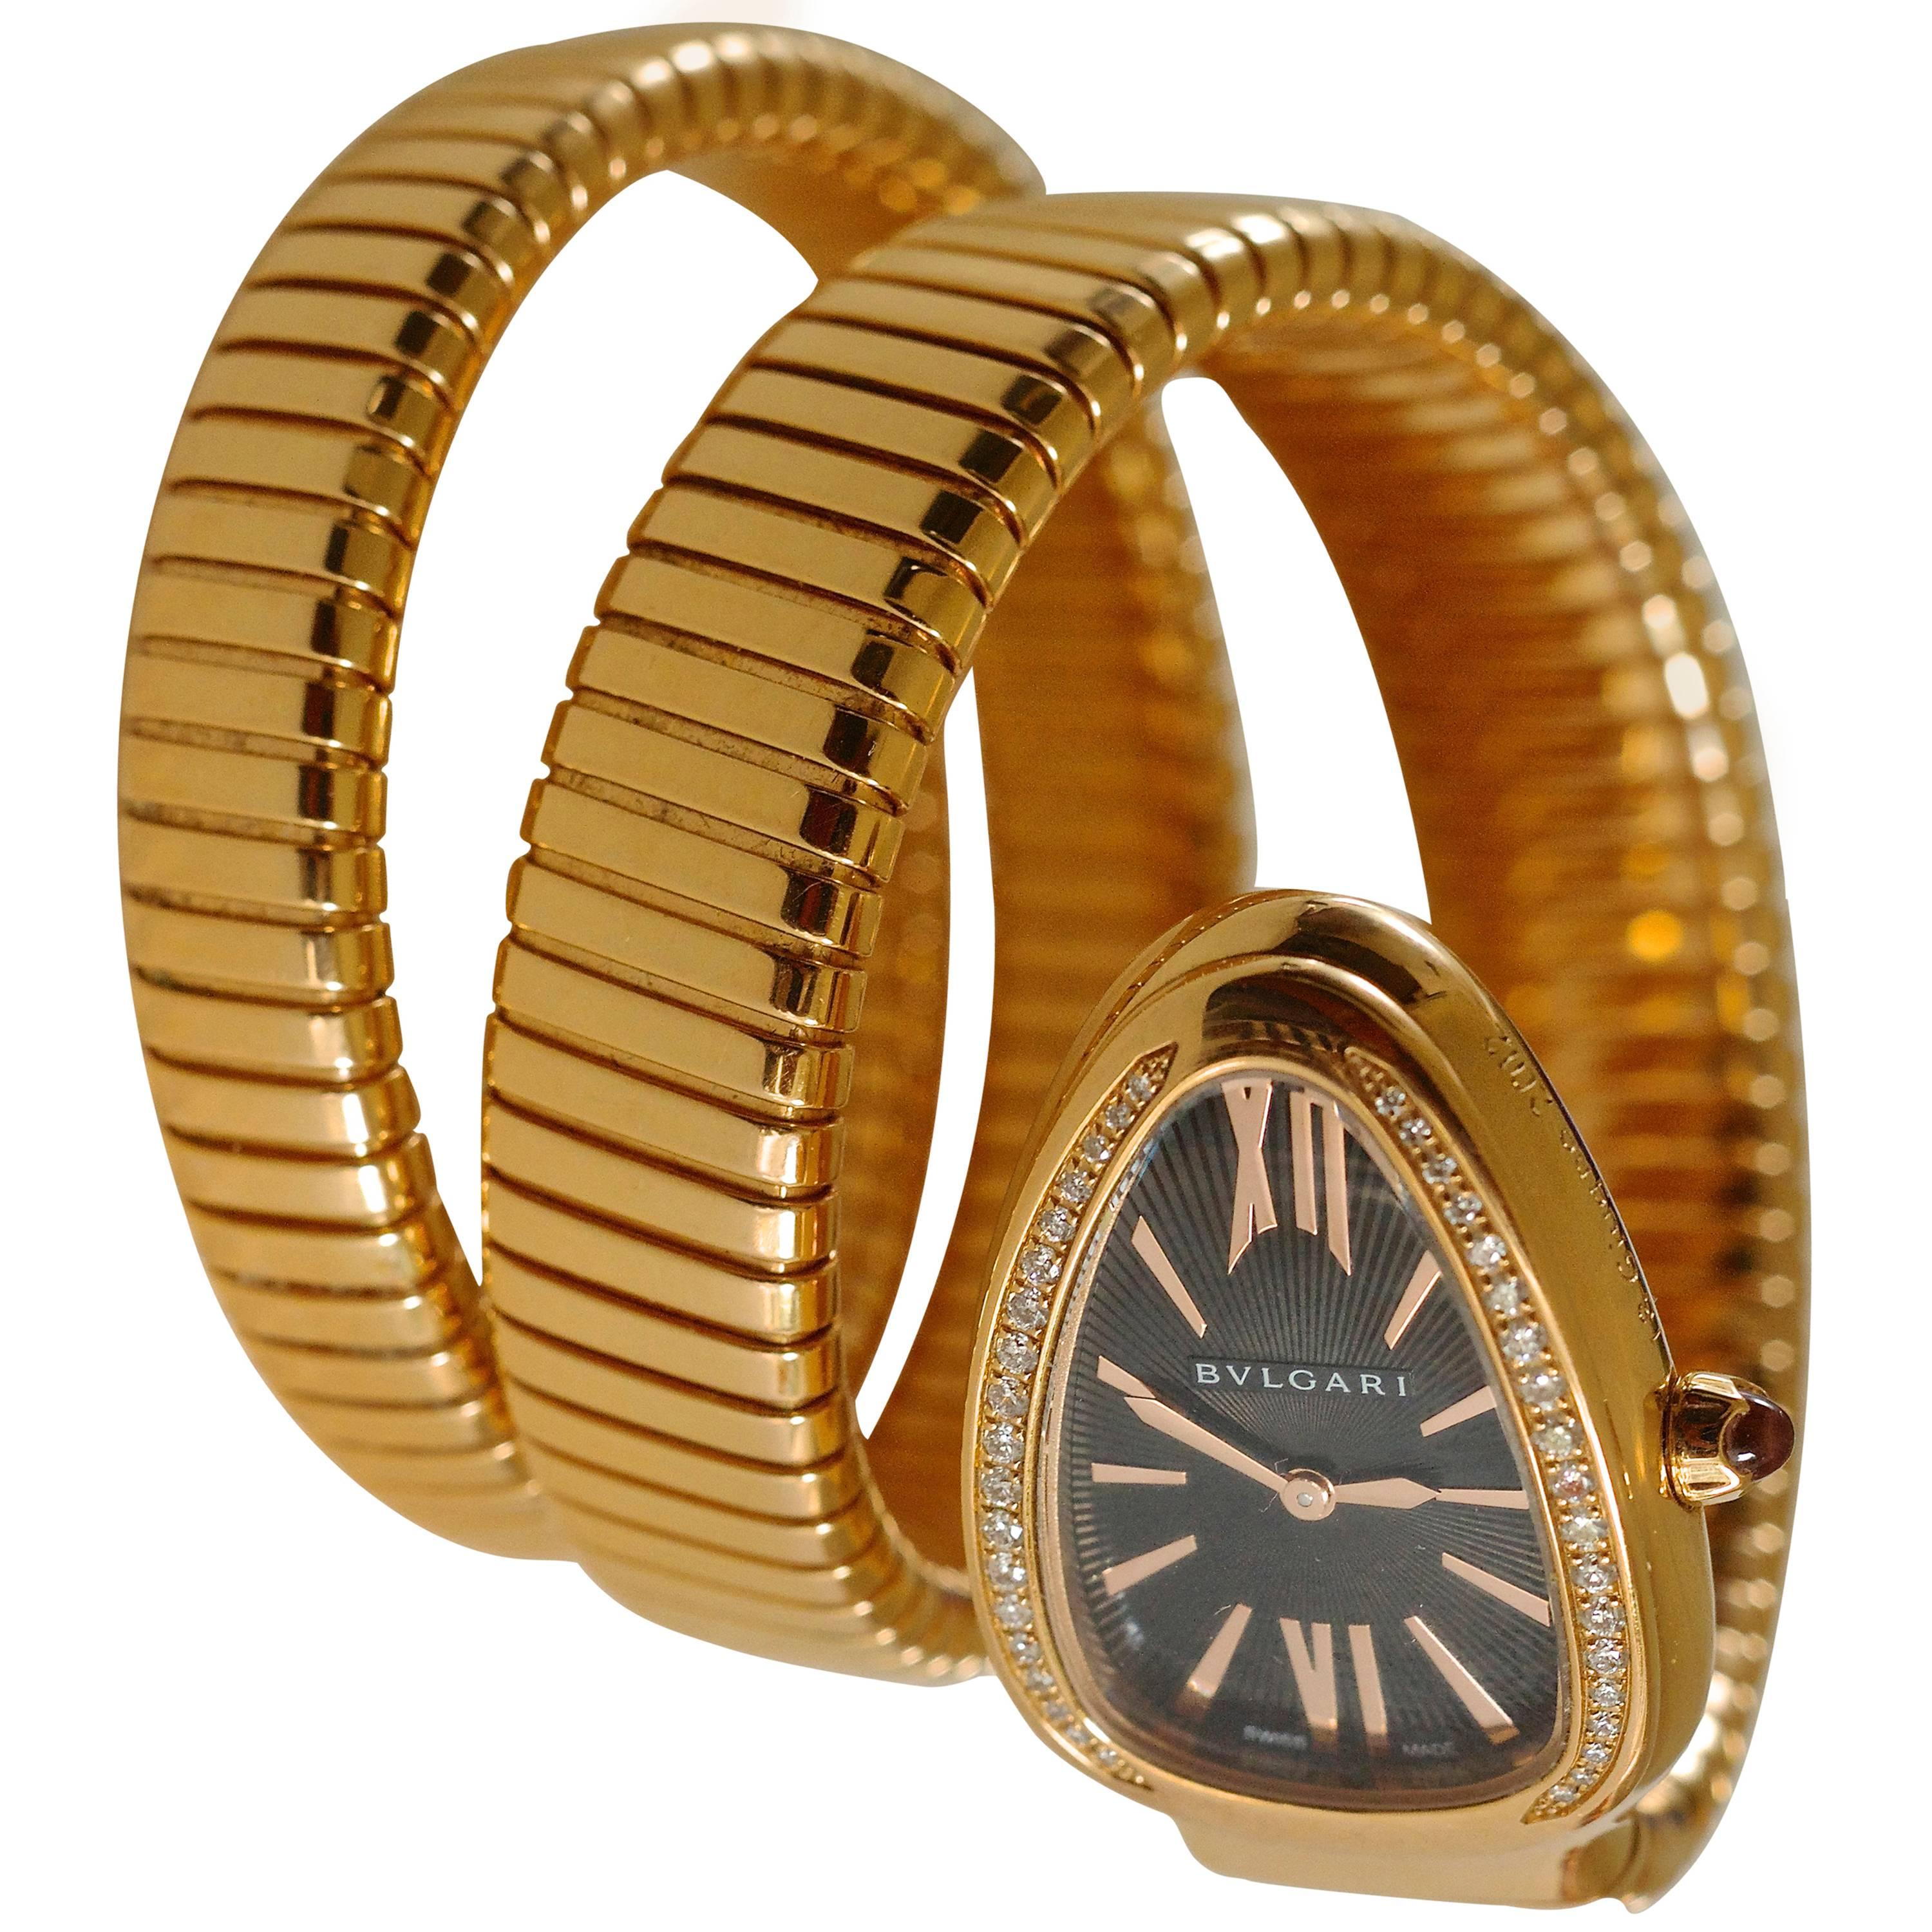 Bulgari Serpenti Tubogas Pink Gold Ladies Wrist Watch